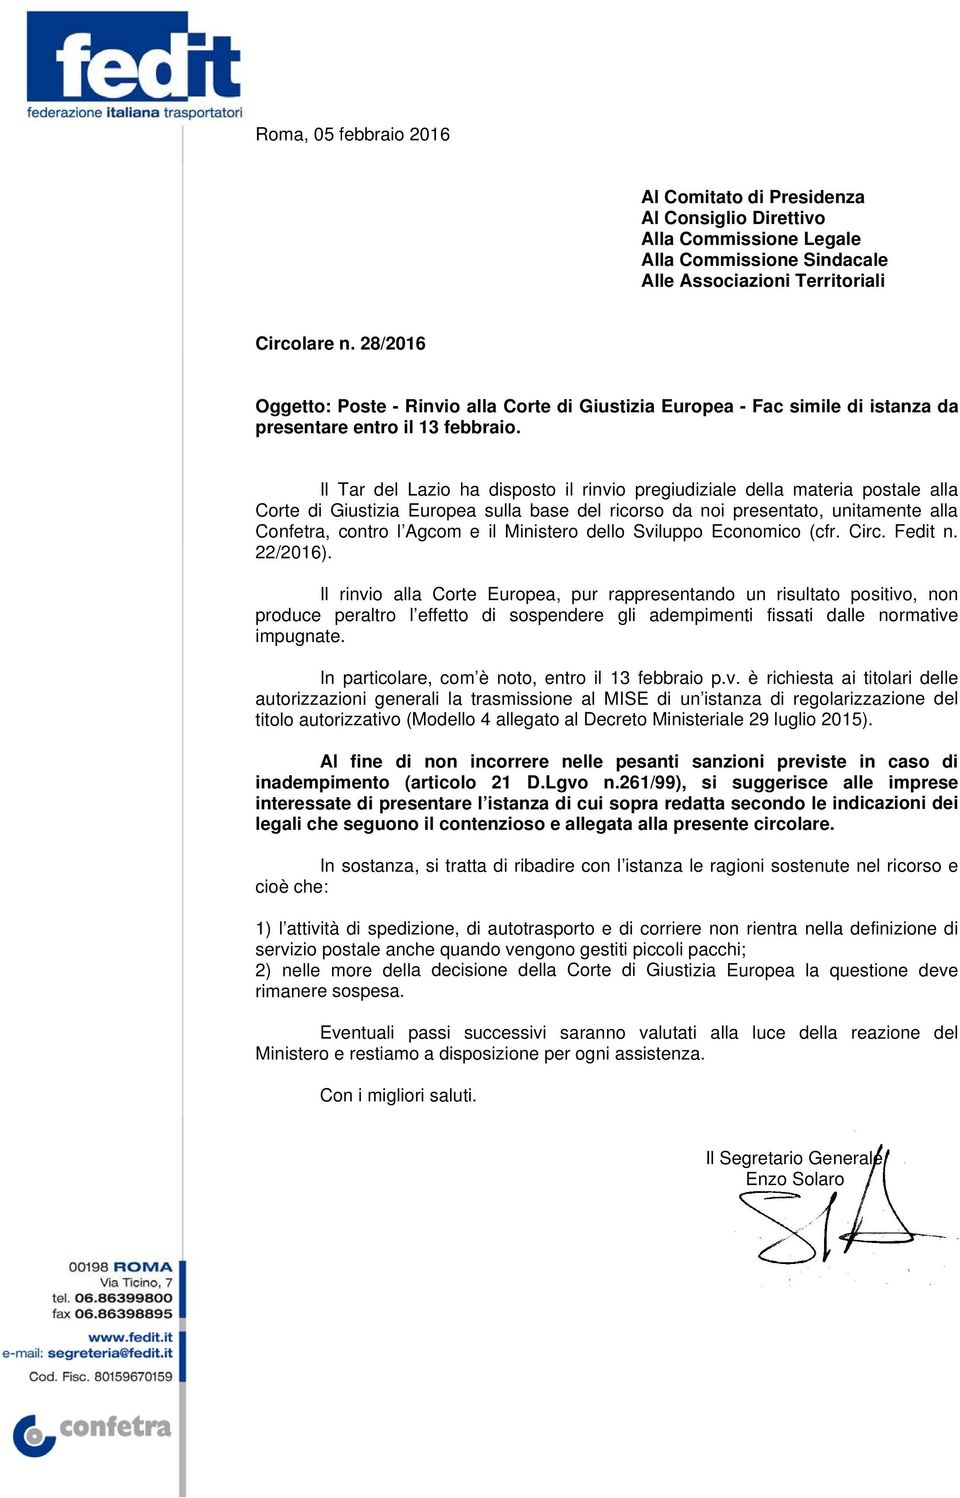 Il Tar del Lazio ha disposto il rinvio pregiudiziale della materia postale alla Corte di Giustizia Europea sulla base del ricorso da noi presentato, unitamente alla Confetra, contro l Agcom e il